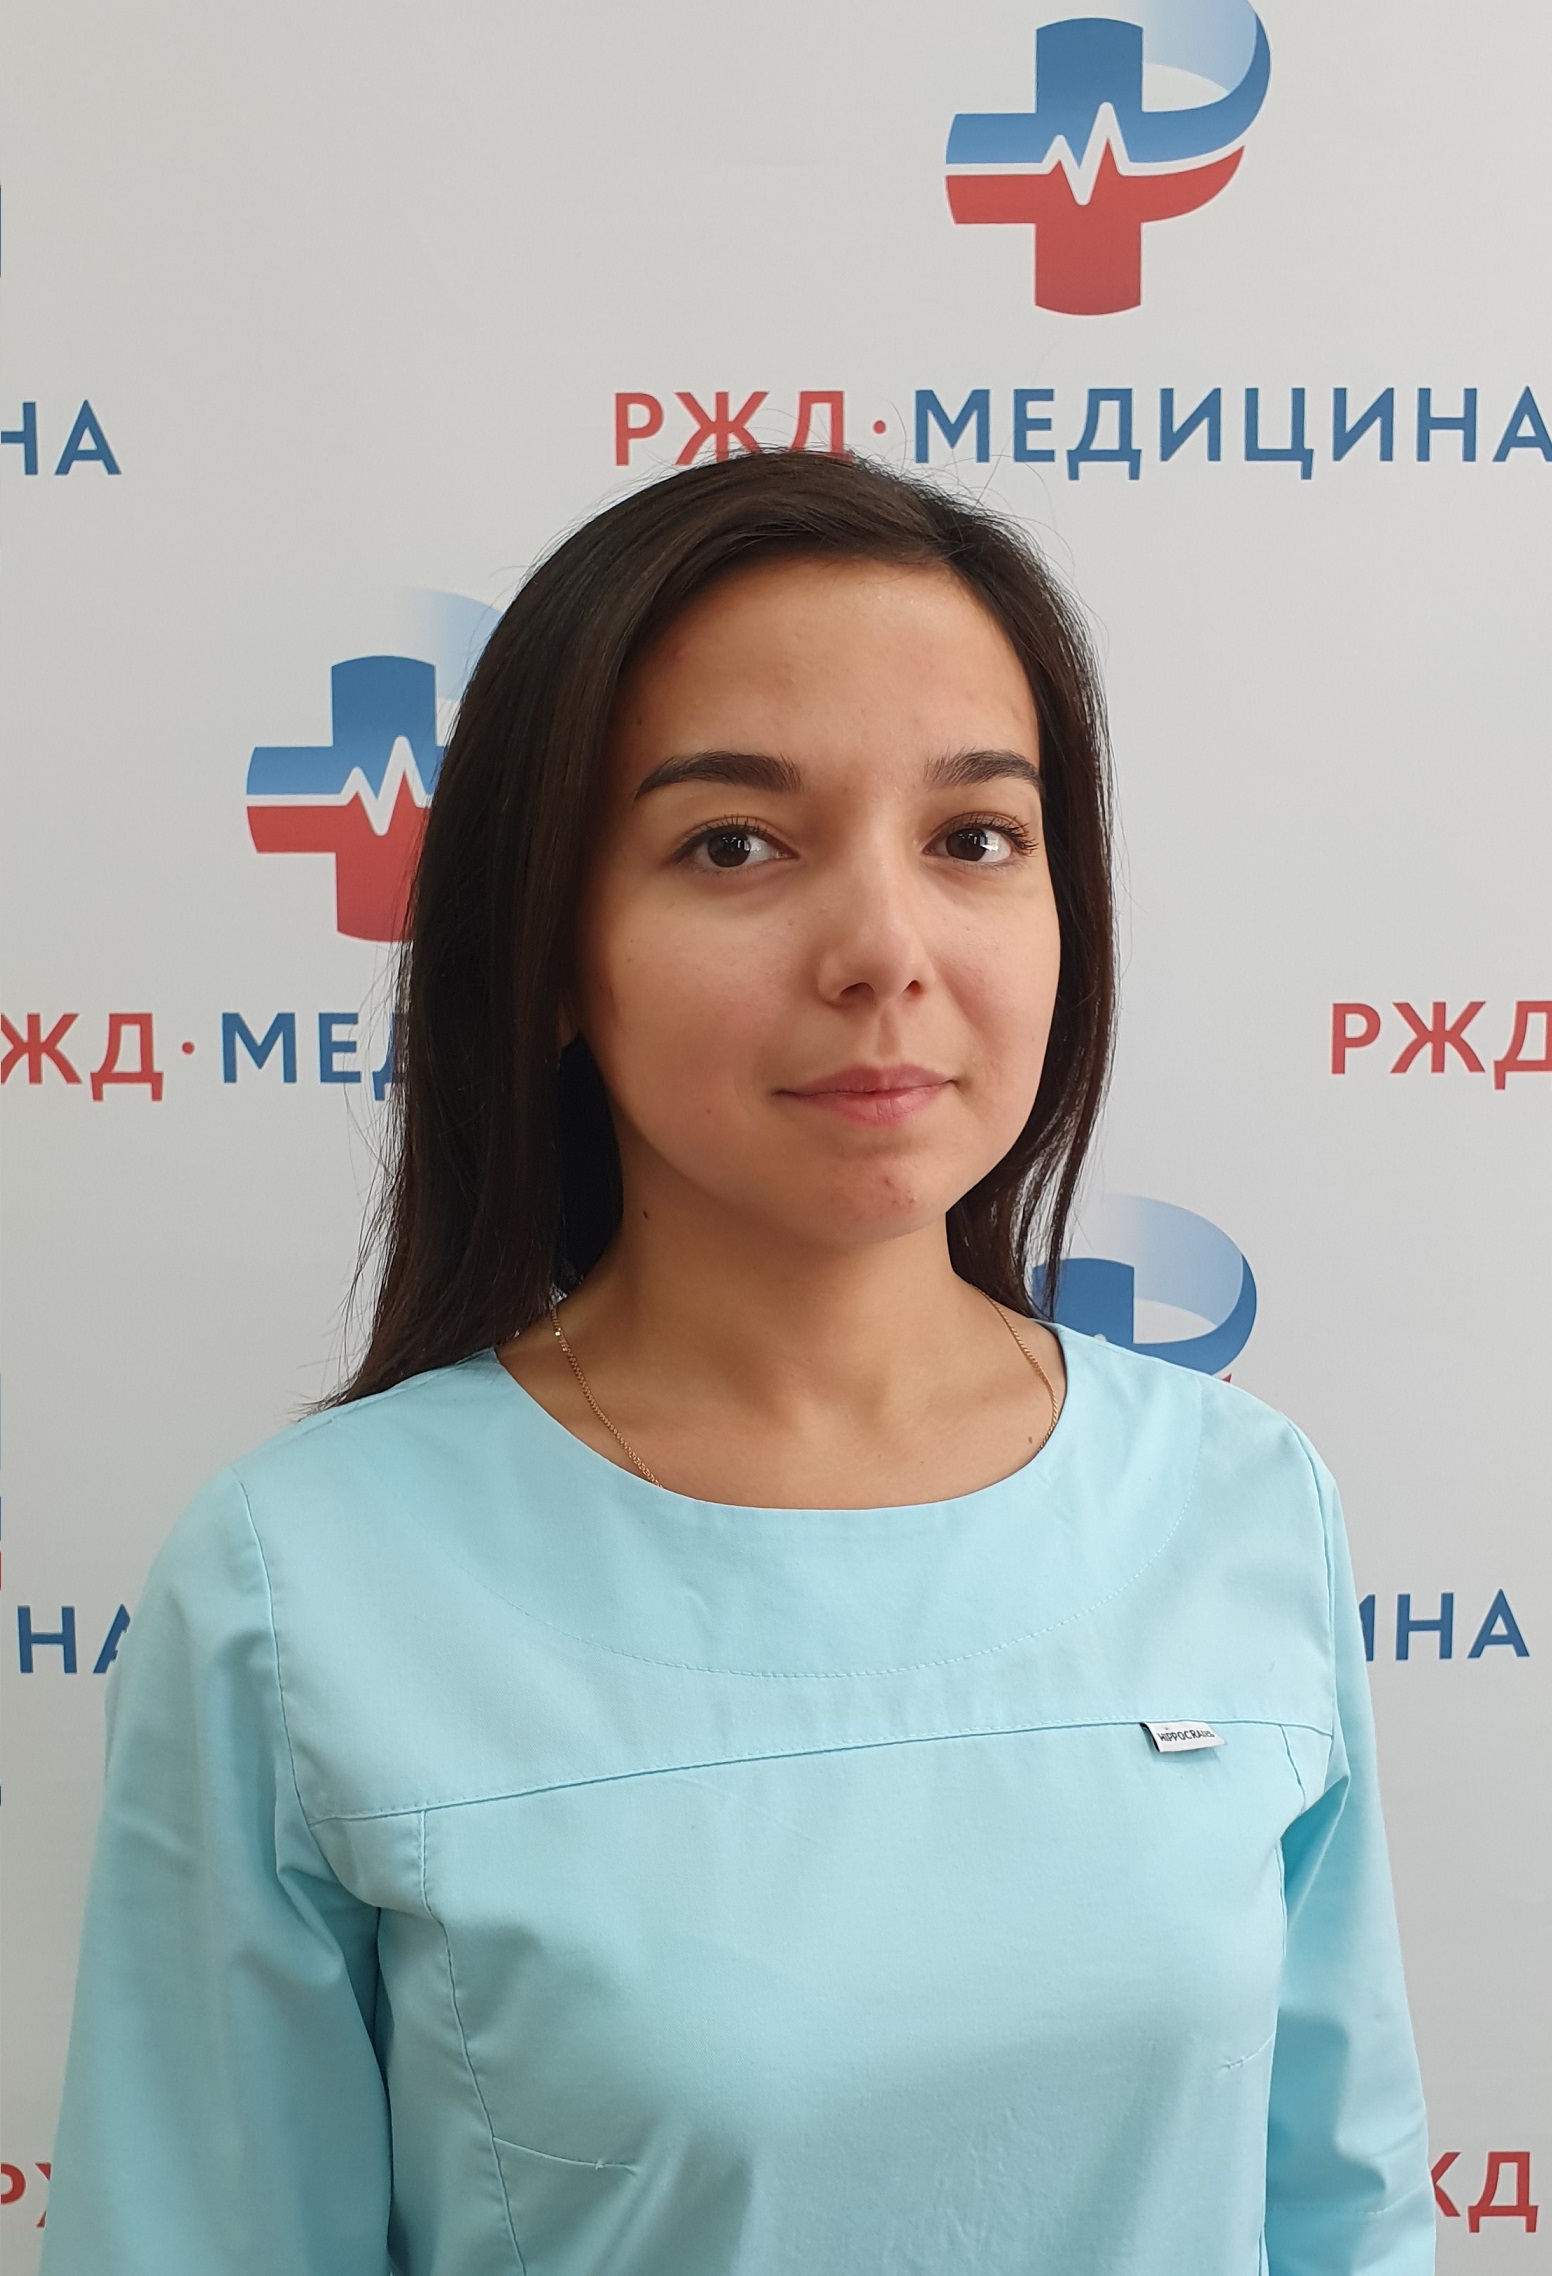 Рафикова Ильмира Рашитовна